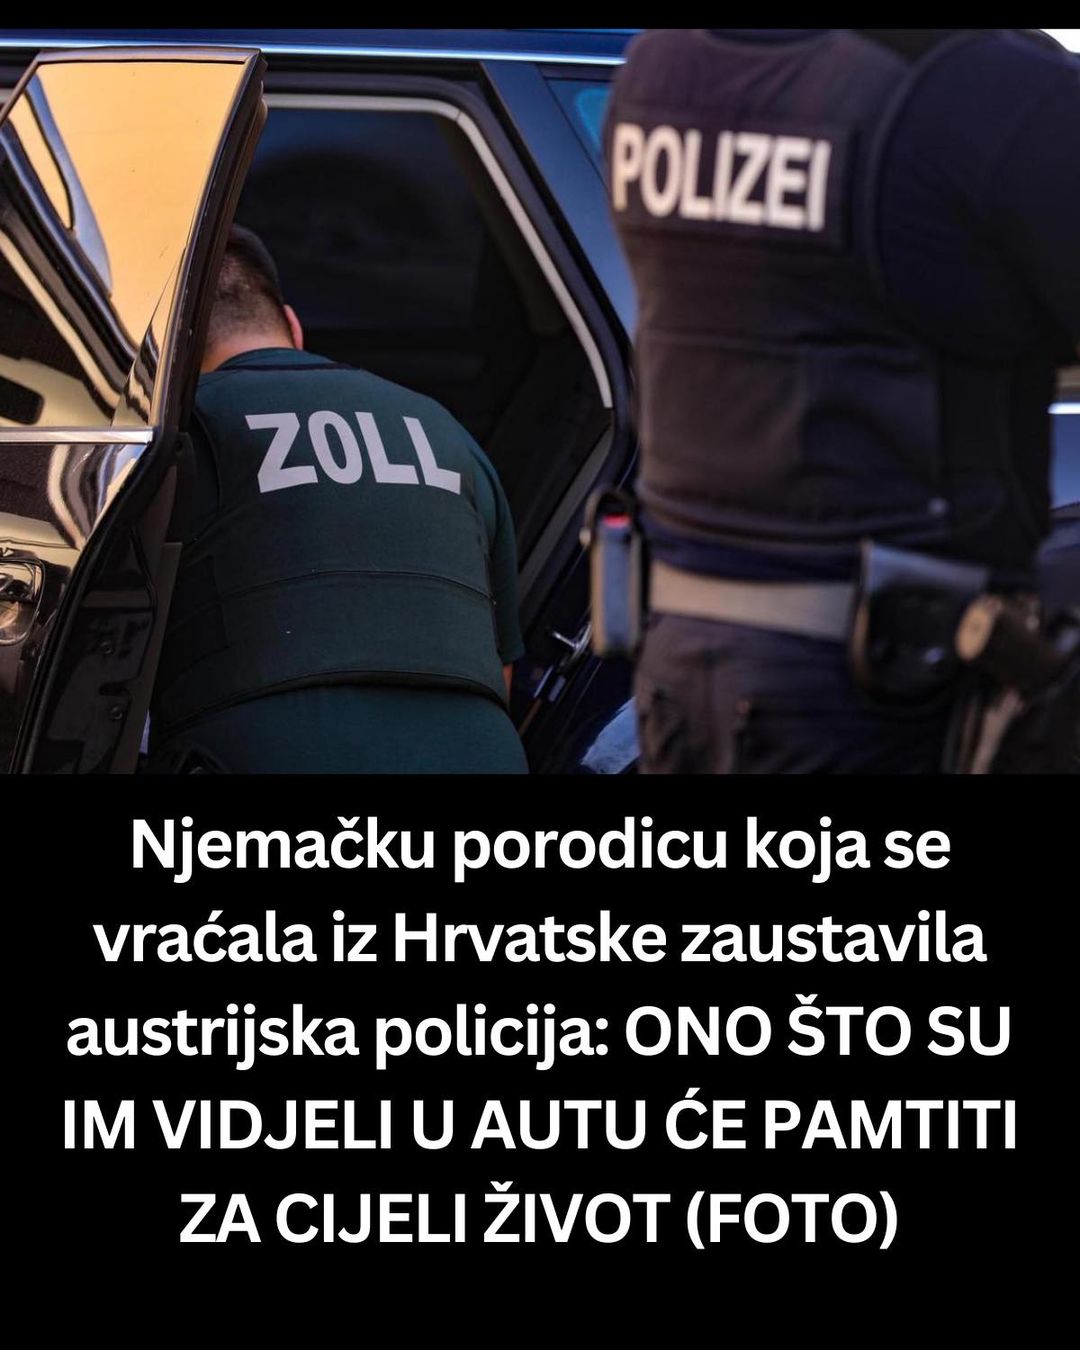 Njemačku porodicu koja se vraćala iz Hrvatske zaustavila austrijska policija: ONO ŠTO SU IM VIDJELI U AUTU ĆE PAMTITI ZA CIJELI ŽIVOT (FOTO)